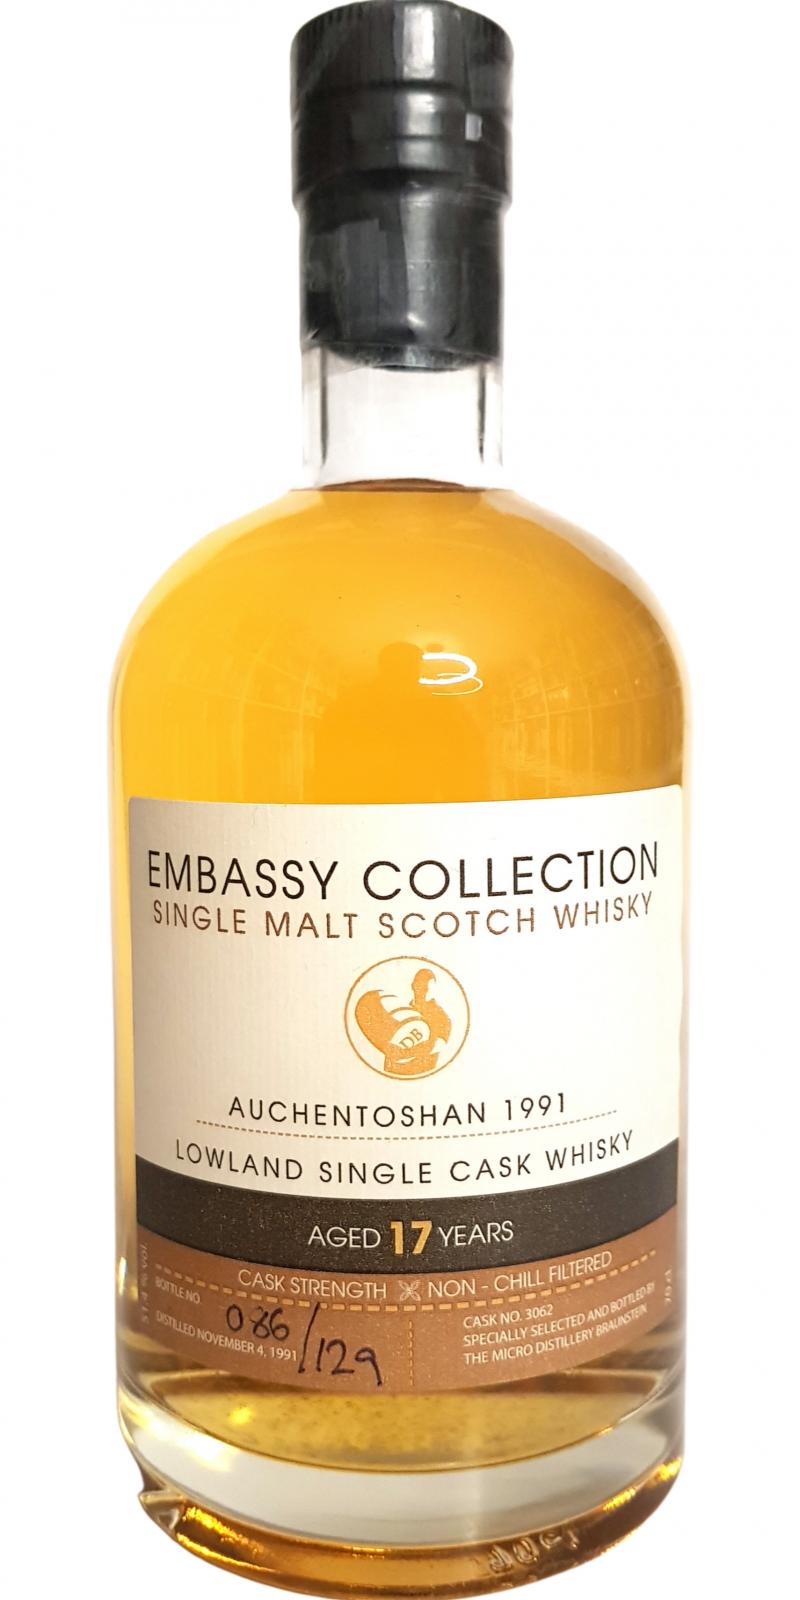 Auchentoshan 1991 Bs Embassy Collection 51.4% 700ml